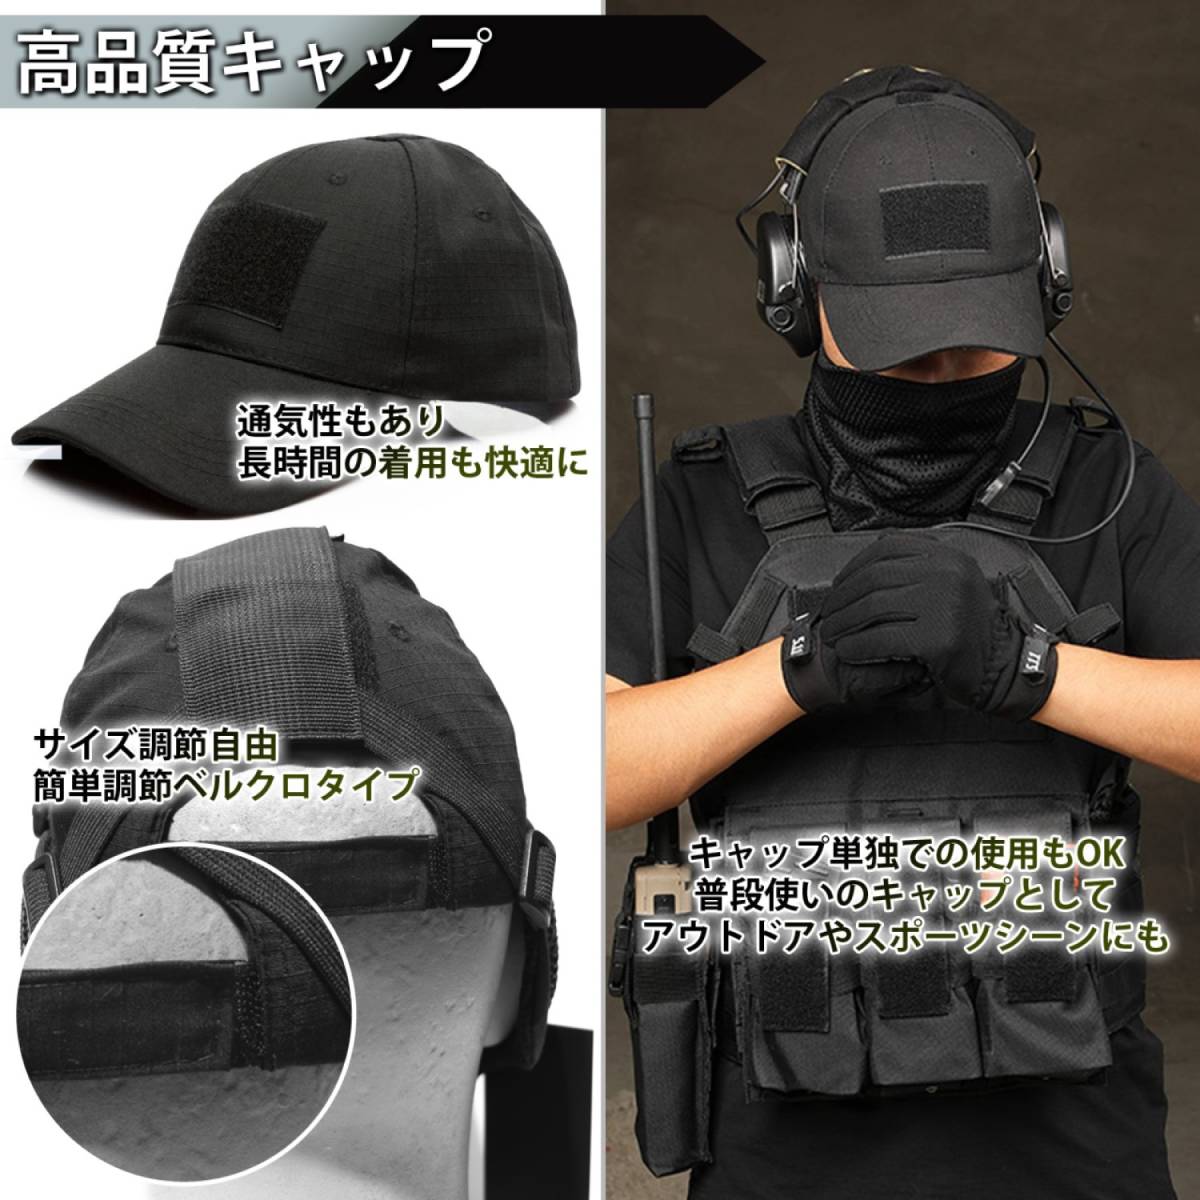 サバゲー マスク フェイスガード タクティカル キャップ セット 耳保護付き サバイバルゲーム 装備 (ブラック)_画像3